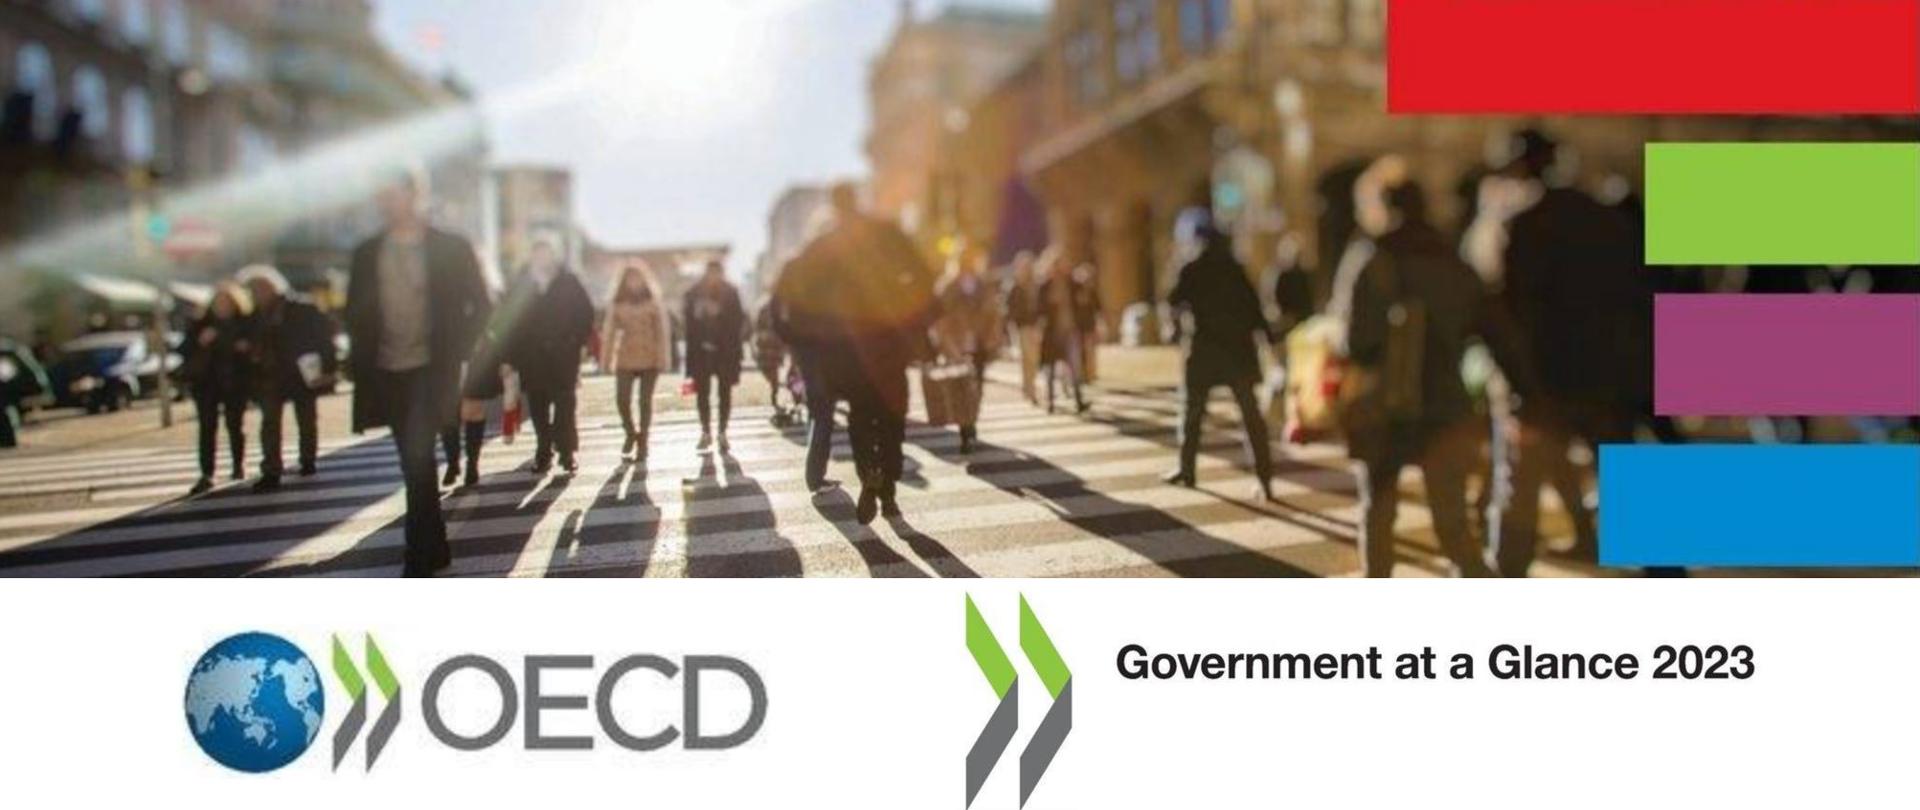 Ludzie idą przez przejście dla pieszych. Po prawej stronie cztery kolorowe paski: czerwony, zielony, fioletowy i niebieski. Na dole napis: OECD oraz Government at a Glance 2023.